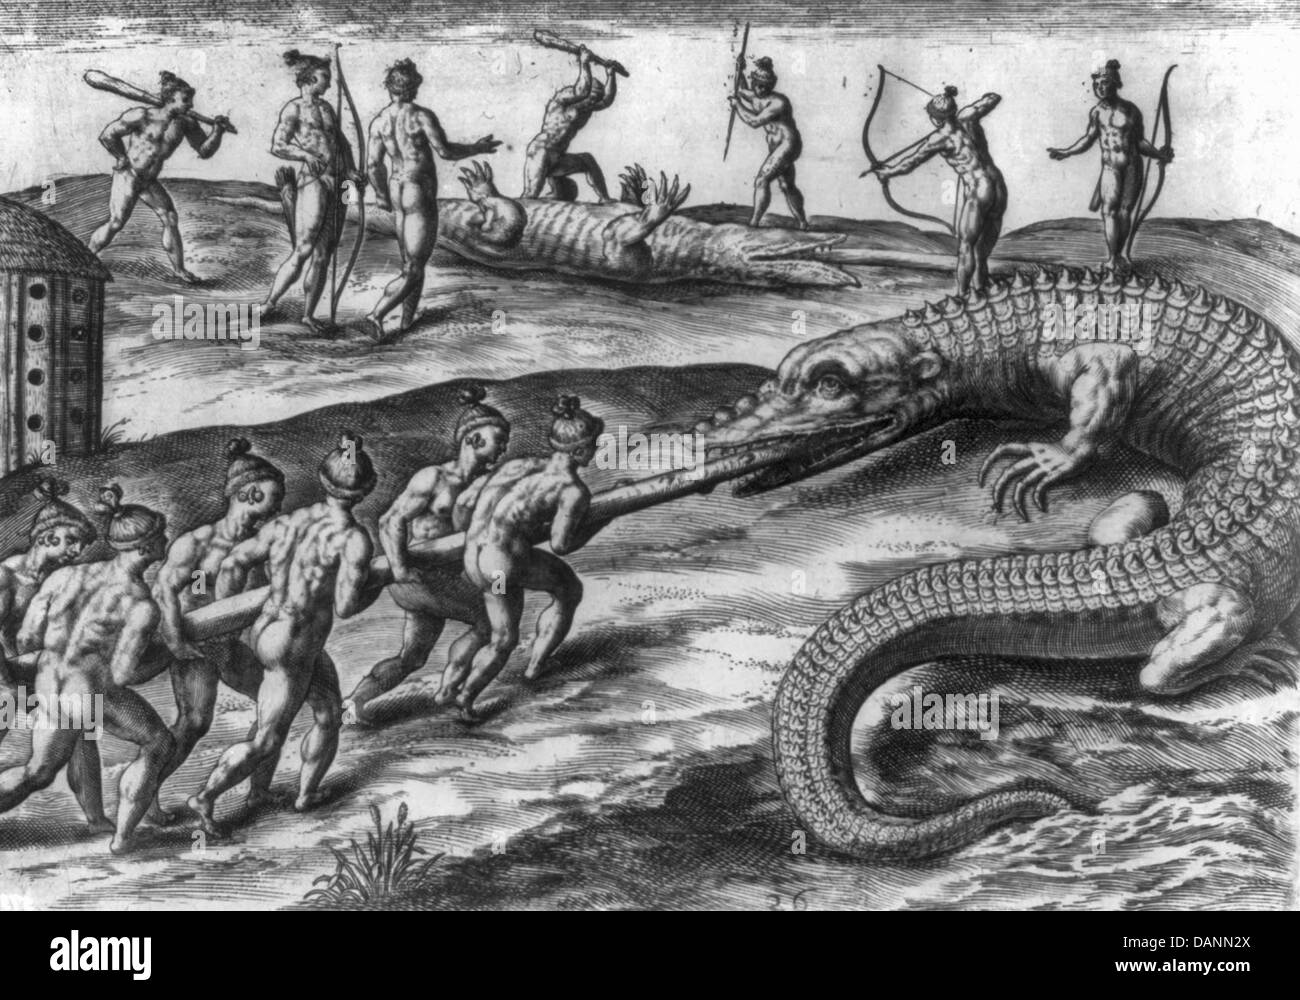 Assassinat d'alligators - Autochtones attaquer et tuer les alligators en faisant adopter un pôle vers le bas c'est de la gorge, de la renverser, le battre avec les clubs, et le tournage avec des flèches, vers 1591 Banque D'Images